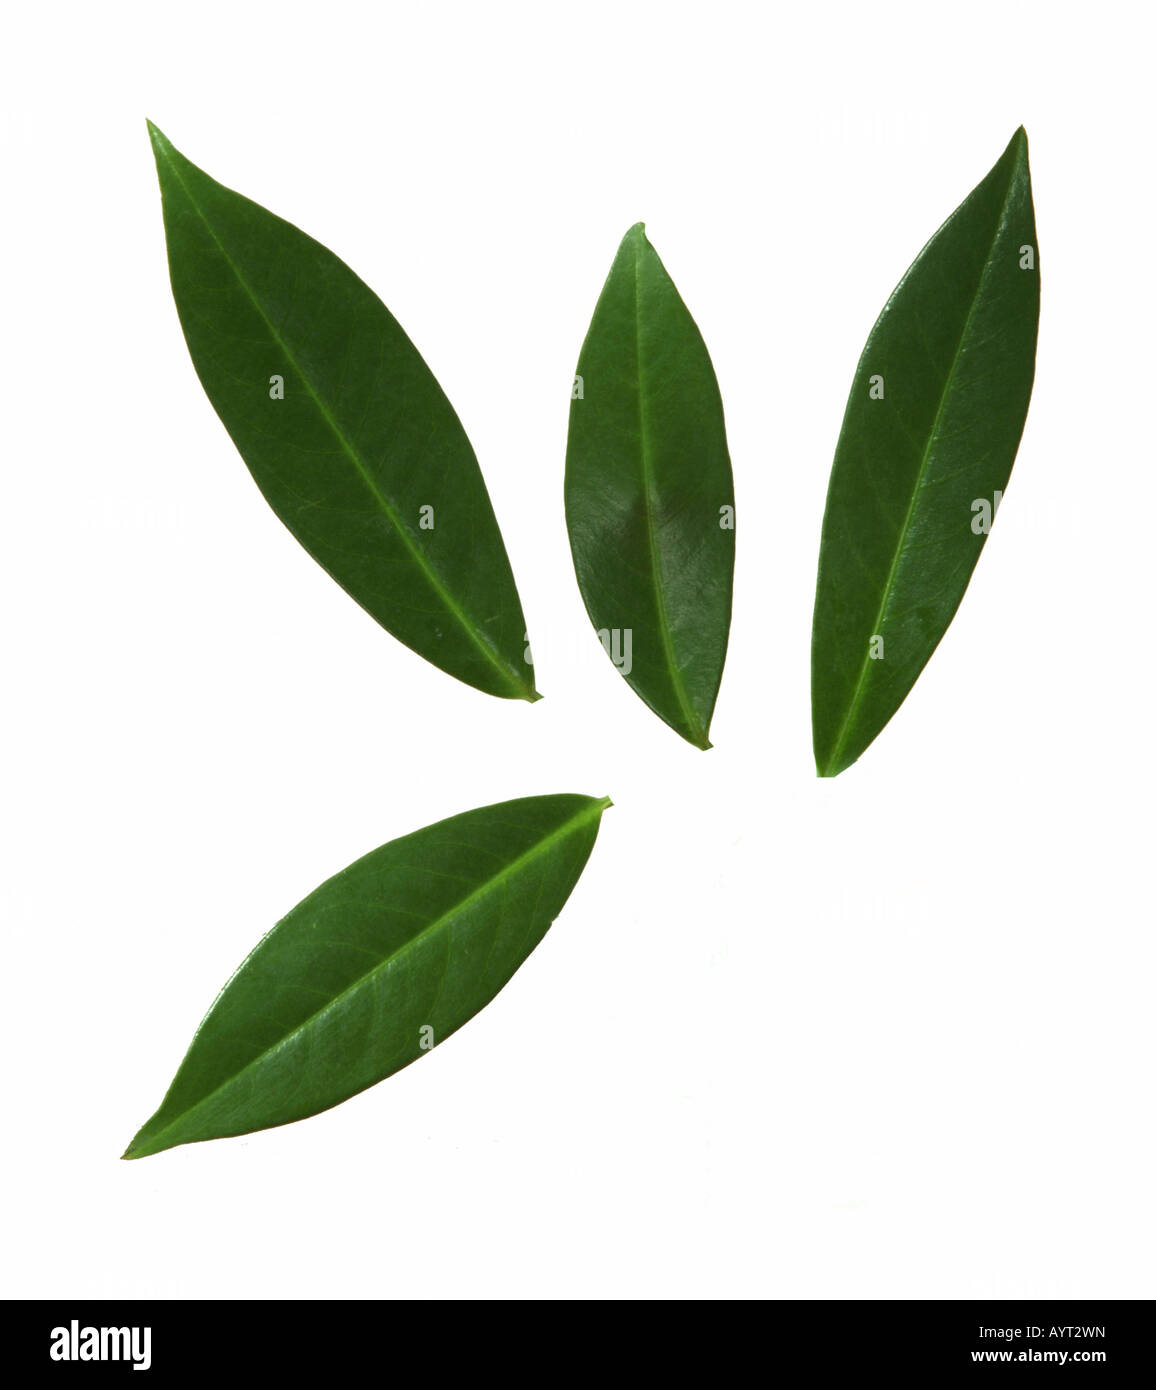 Mango leaves (Mangifera) Stock Photo